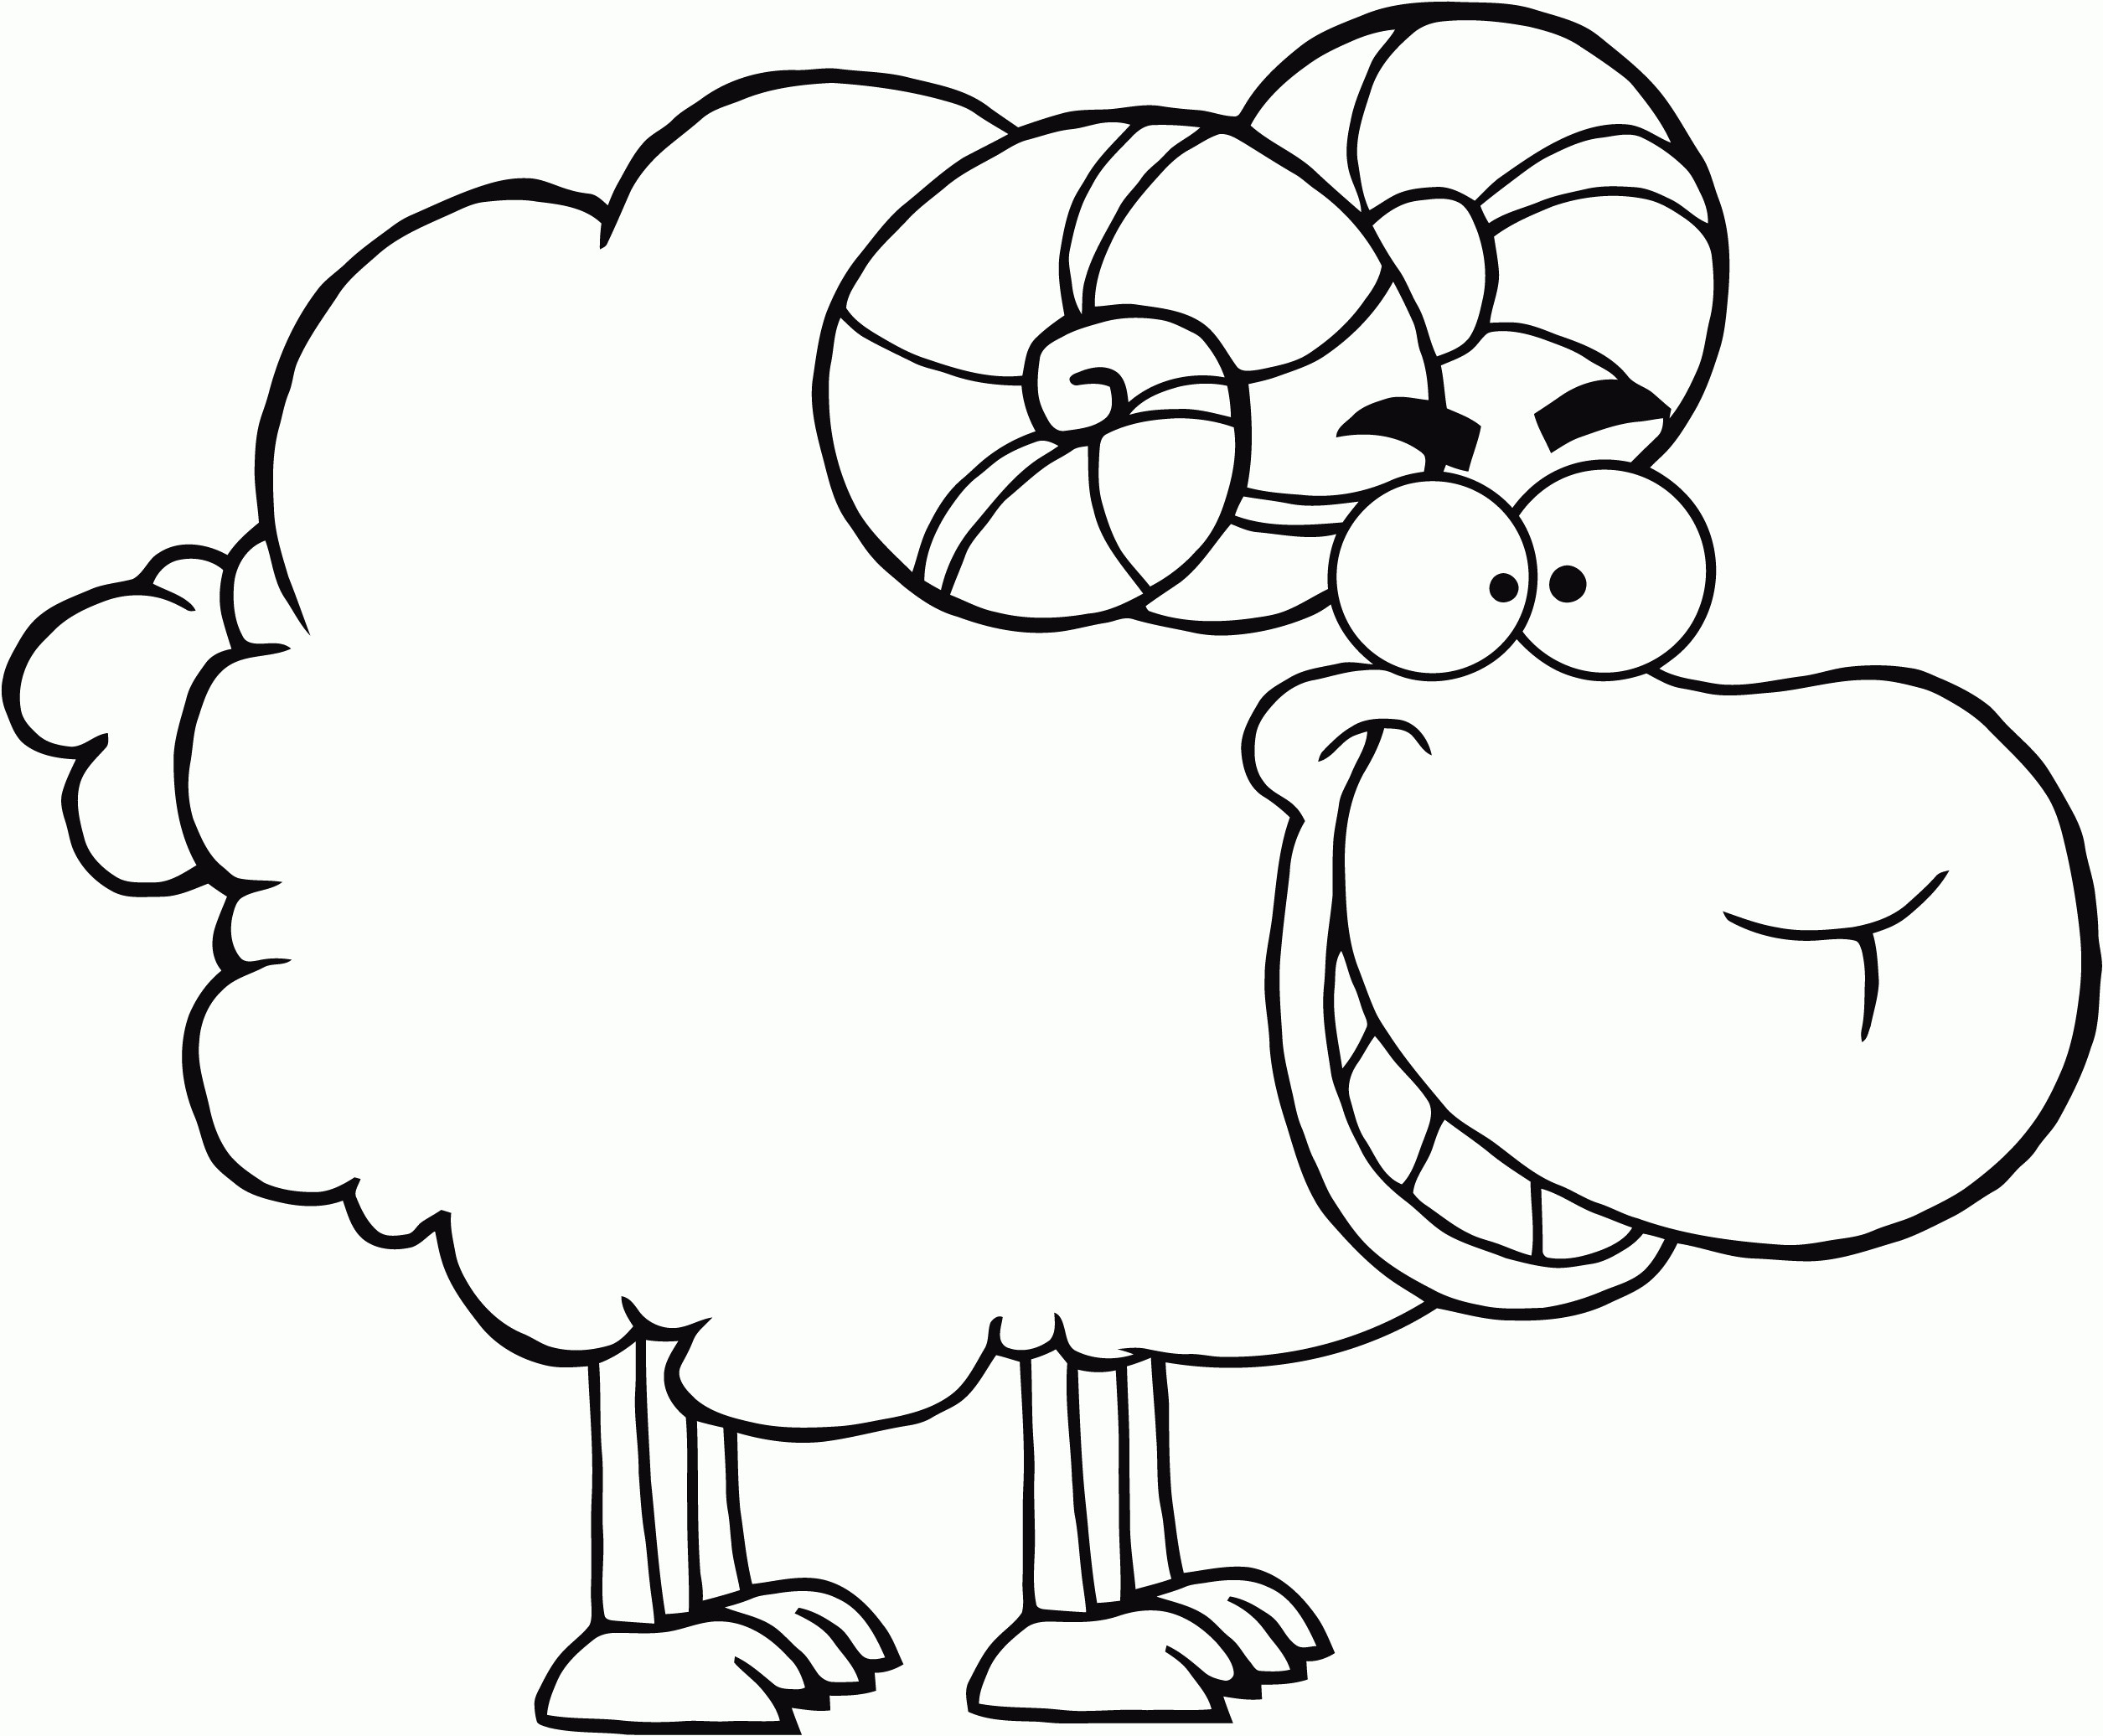 Ausmalbilder Schafe
 Schaf Malvorlagen Kostenlos Zum Ausdrucken Ausmalbilder